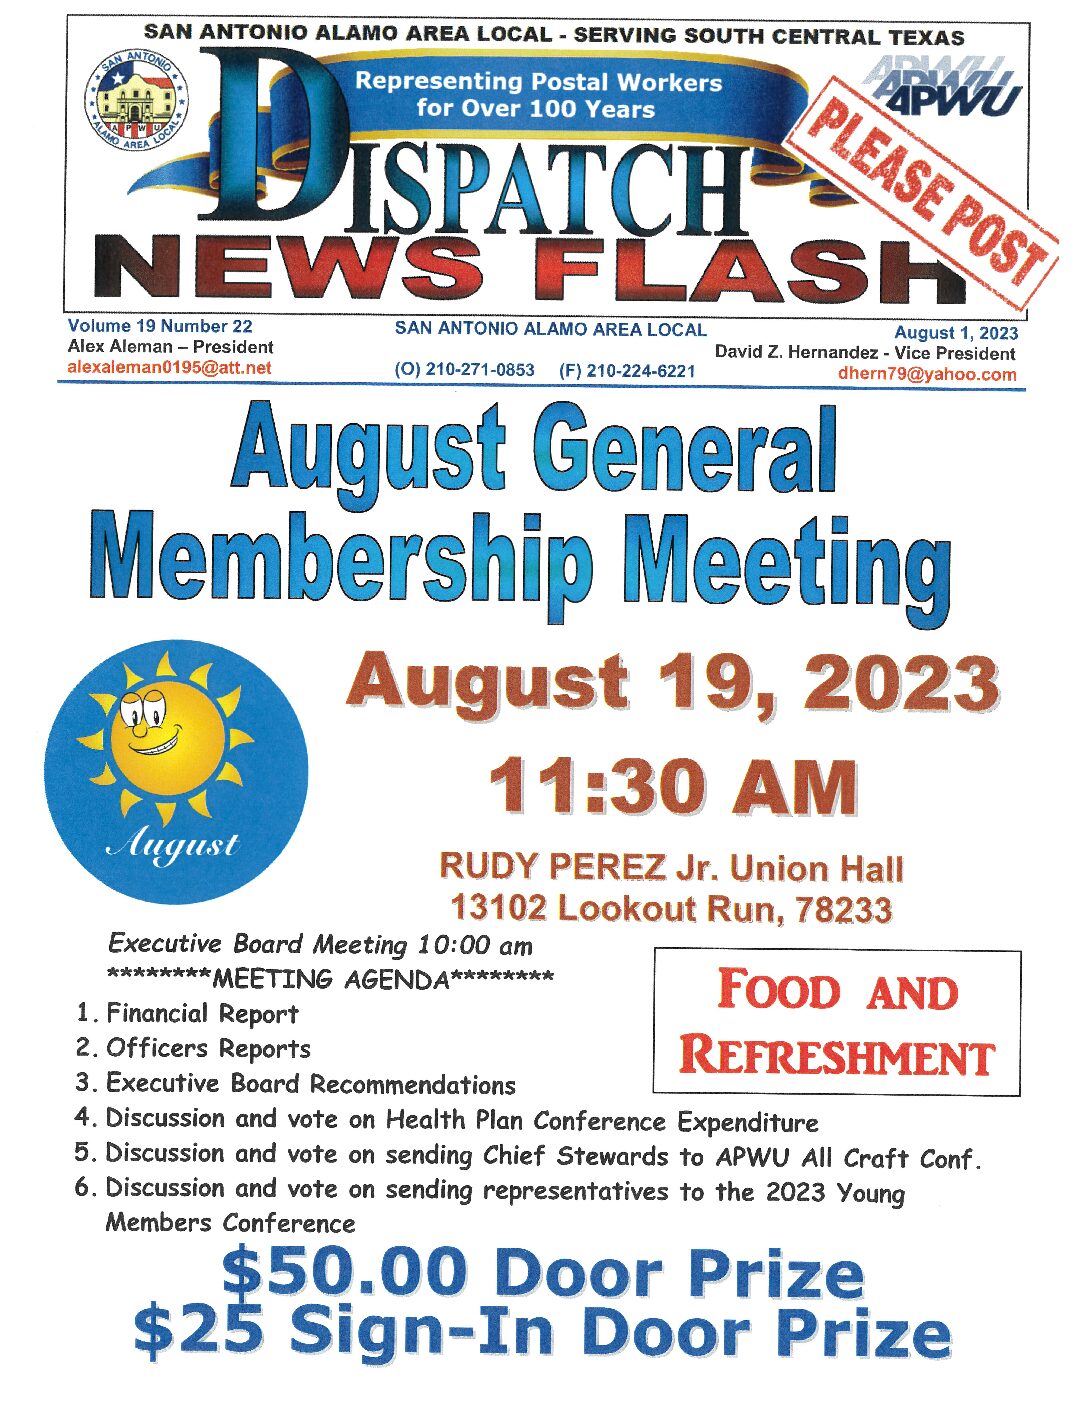 NewsFlash 19-22 August General Membership Meeting Notice - 